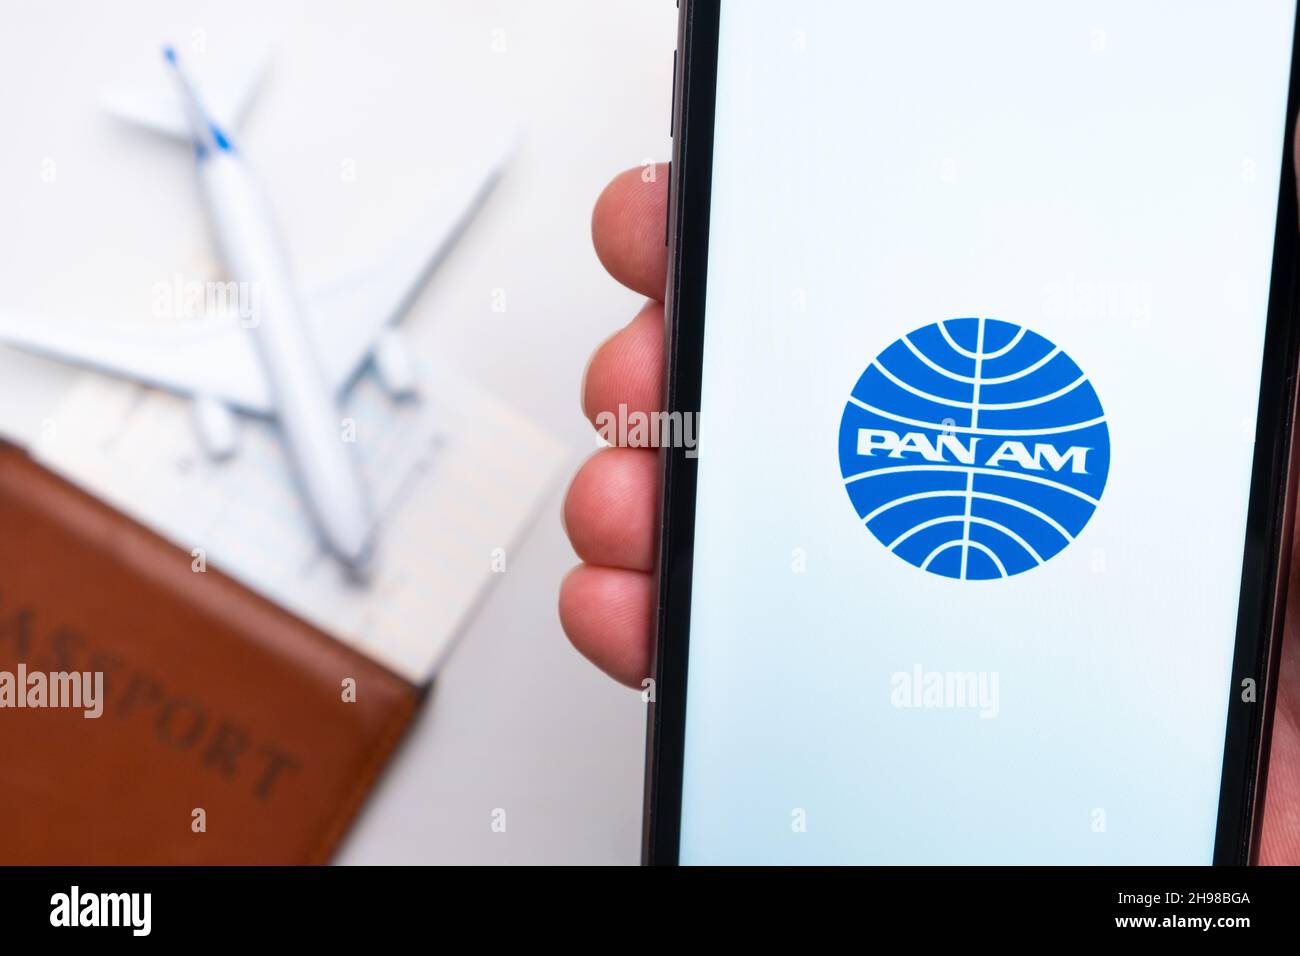 Logo PAN Am Airline sur l'écran du téléphone mobile avec un avion, un passeport et une carte d'embarquement à l'arrière-plan.Le concept de l'application mobile des compagnies aériennes.Novembre 2021, San Francisco, États-Unis Banque D'Images